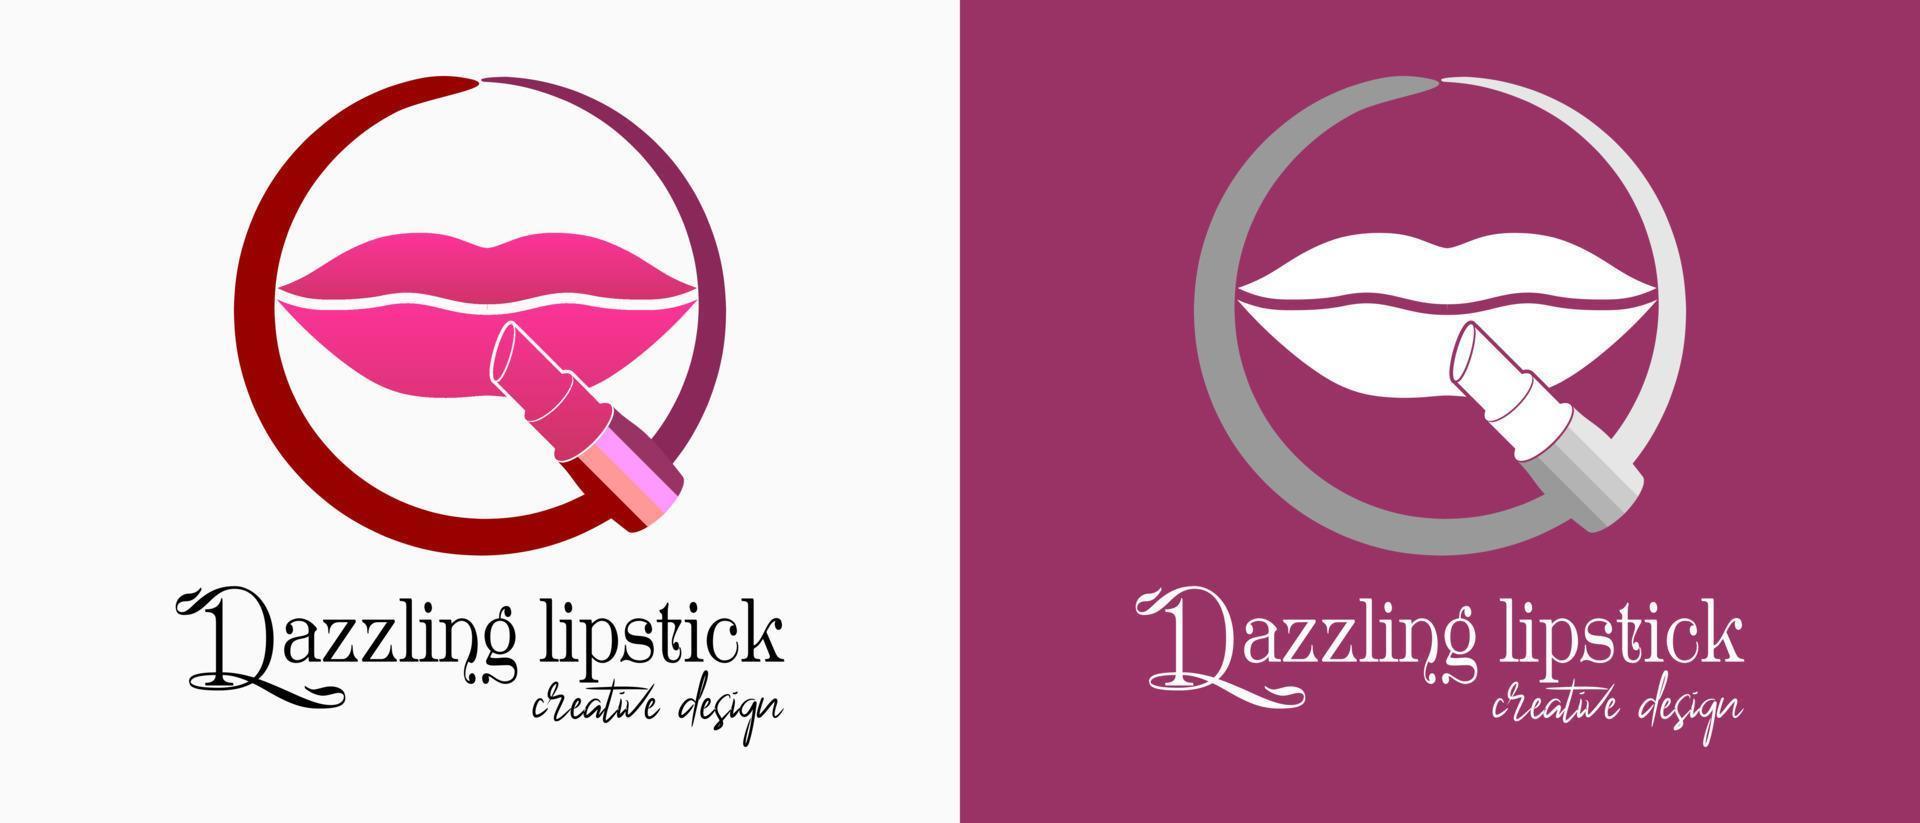 Lippenstift-Logo-Design mit kreativem, farbenfrohem Konzept Lippen-Symbol in einer Kreislinie. Premium-Vektor-Make-up oder Lifestyle-Logo-Illustration vektor